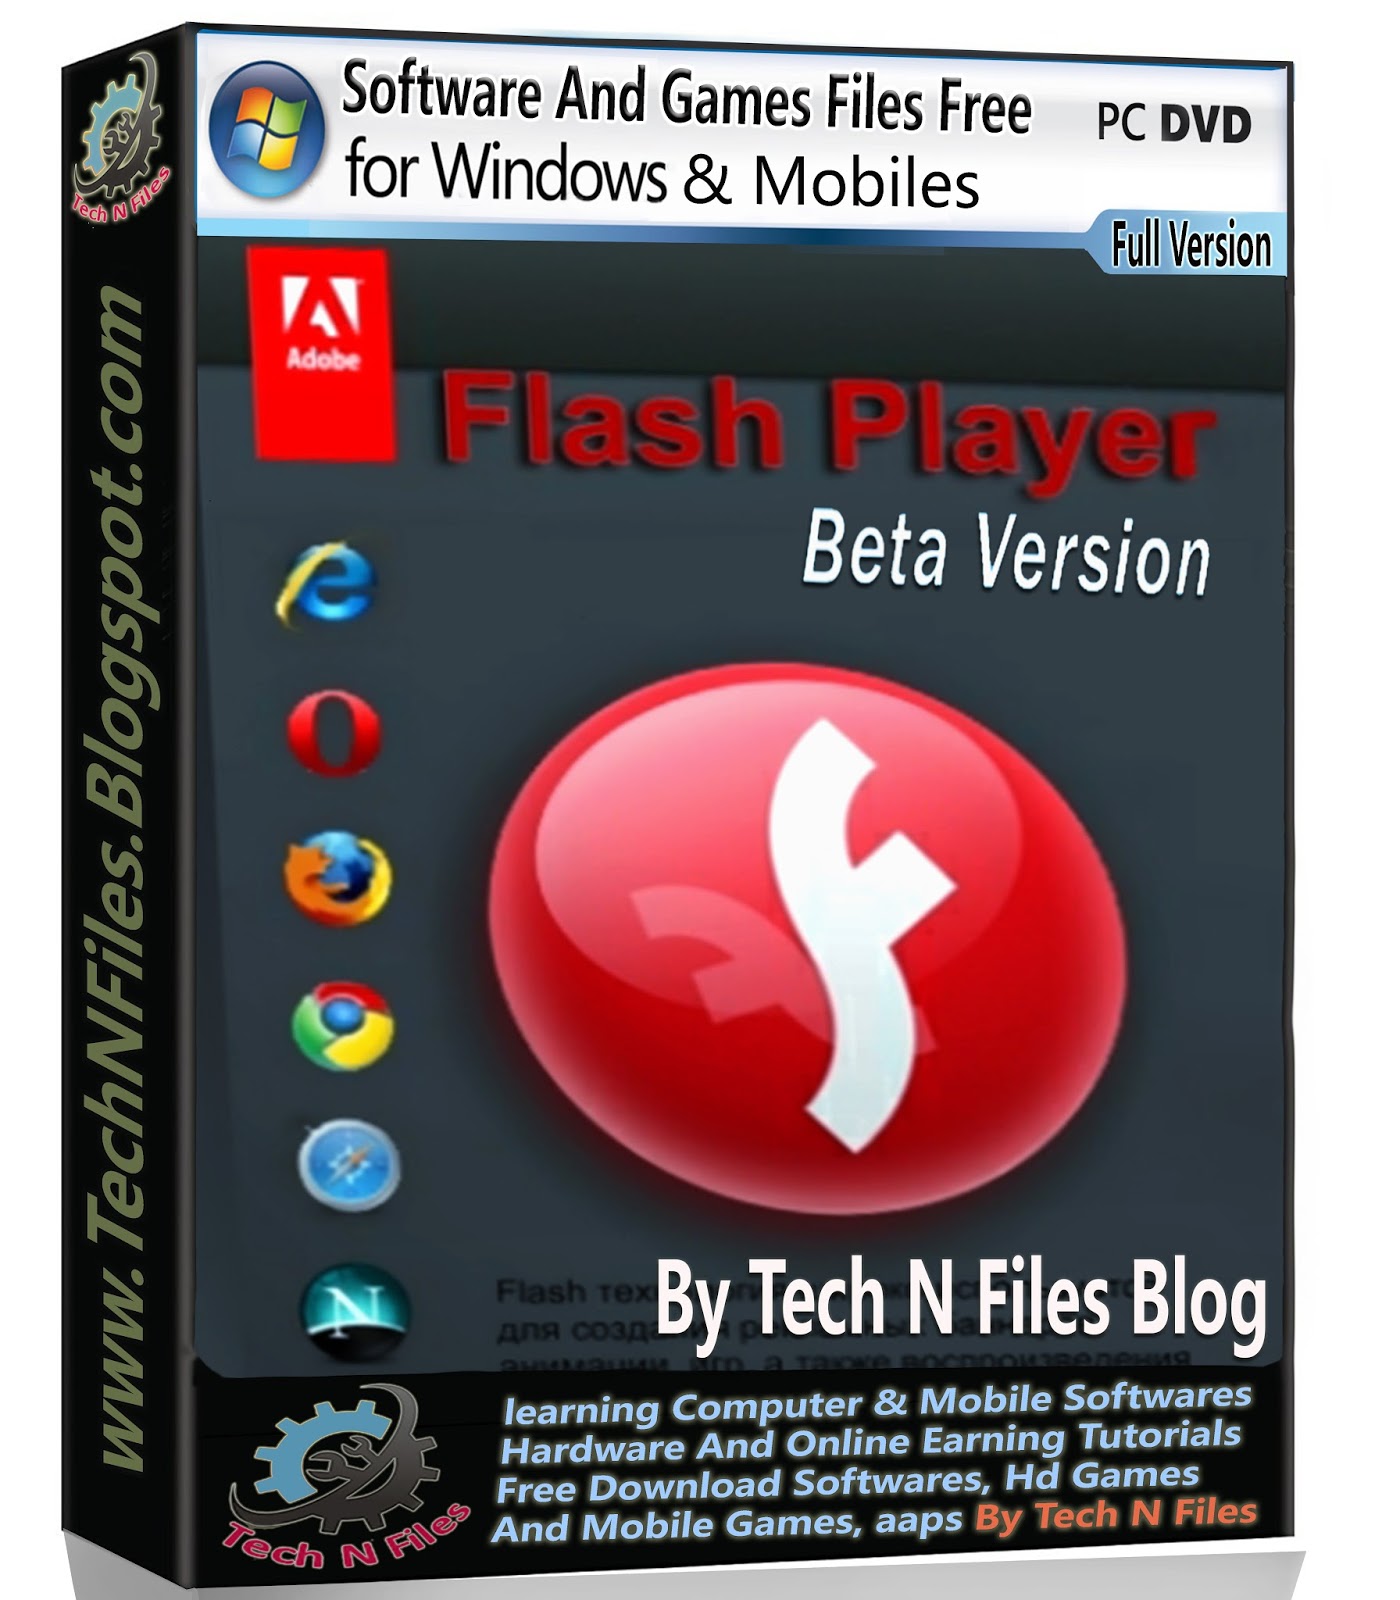 Target flash. Adobe Flash Player 11.7.700.169.